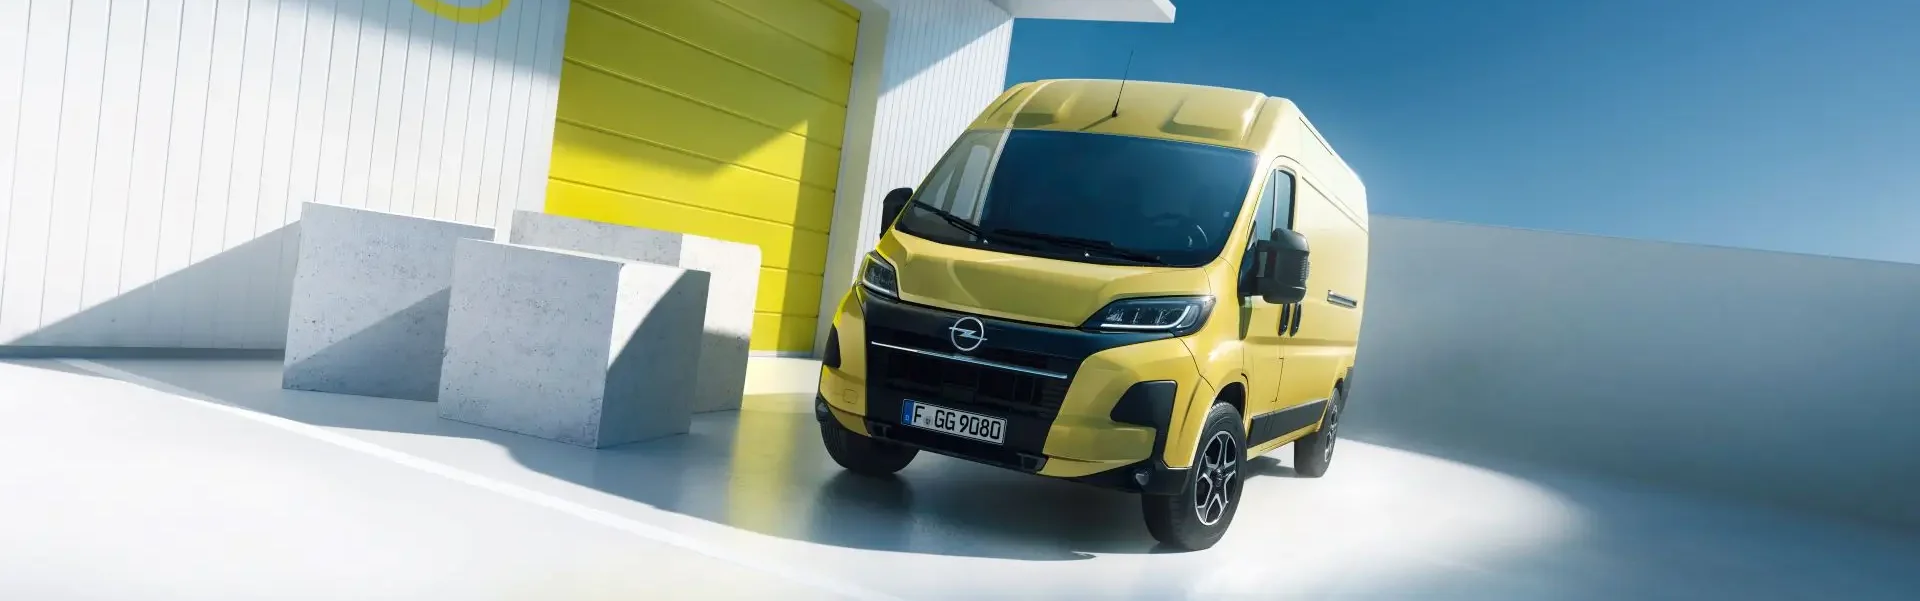 Opel Movano: diesel ou elétrico